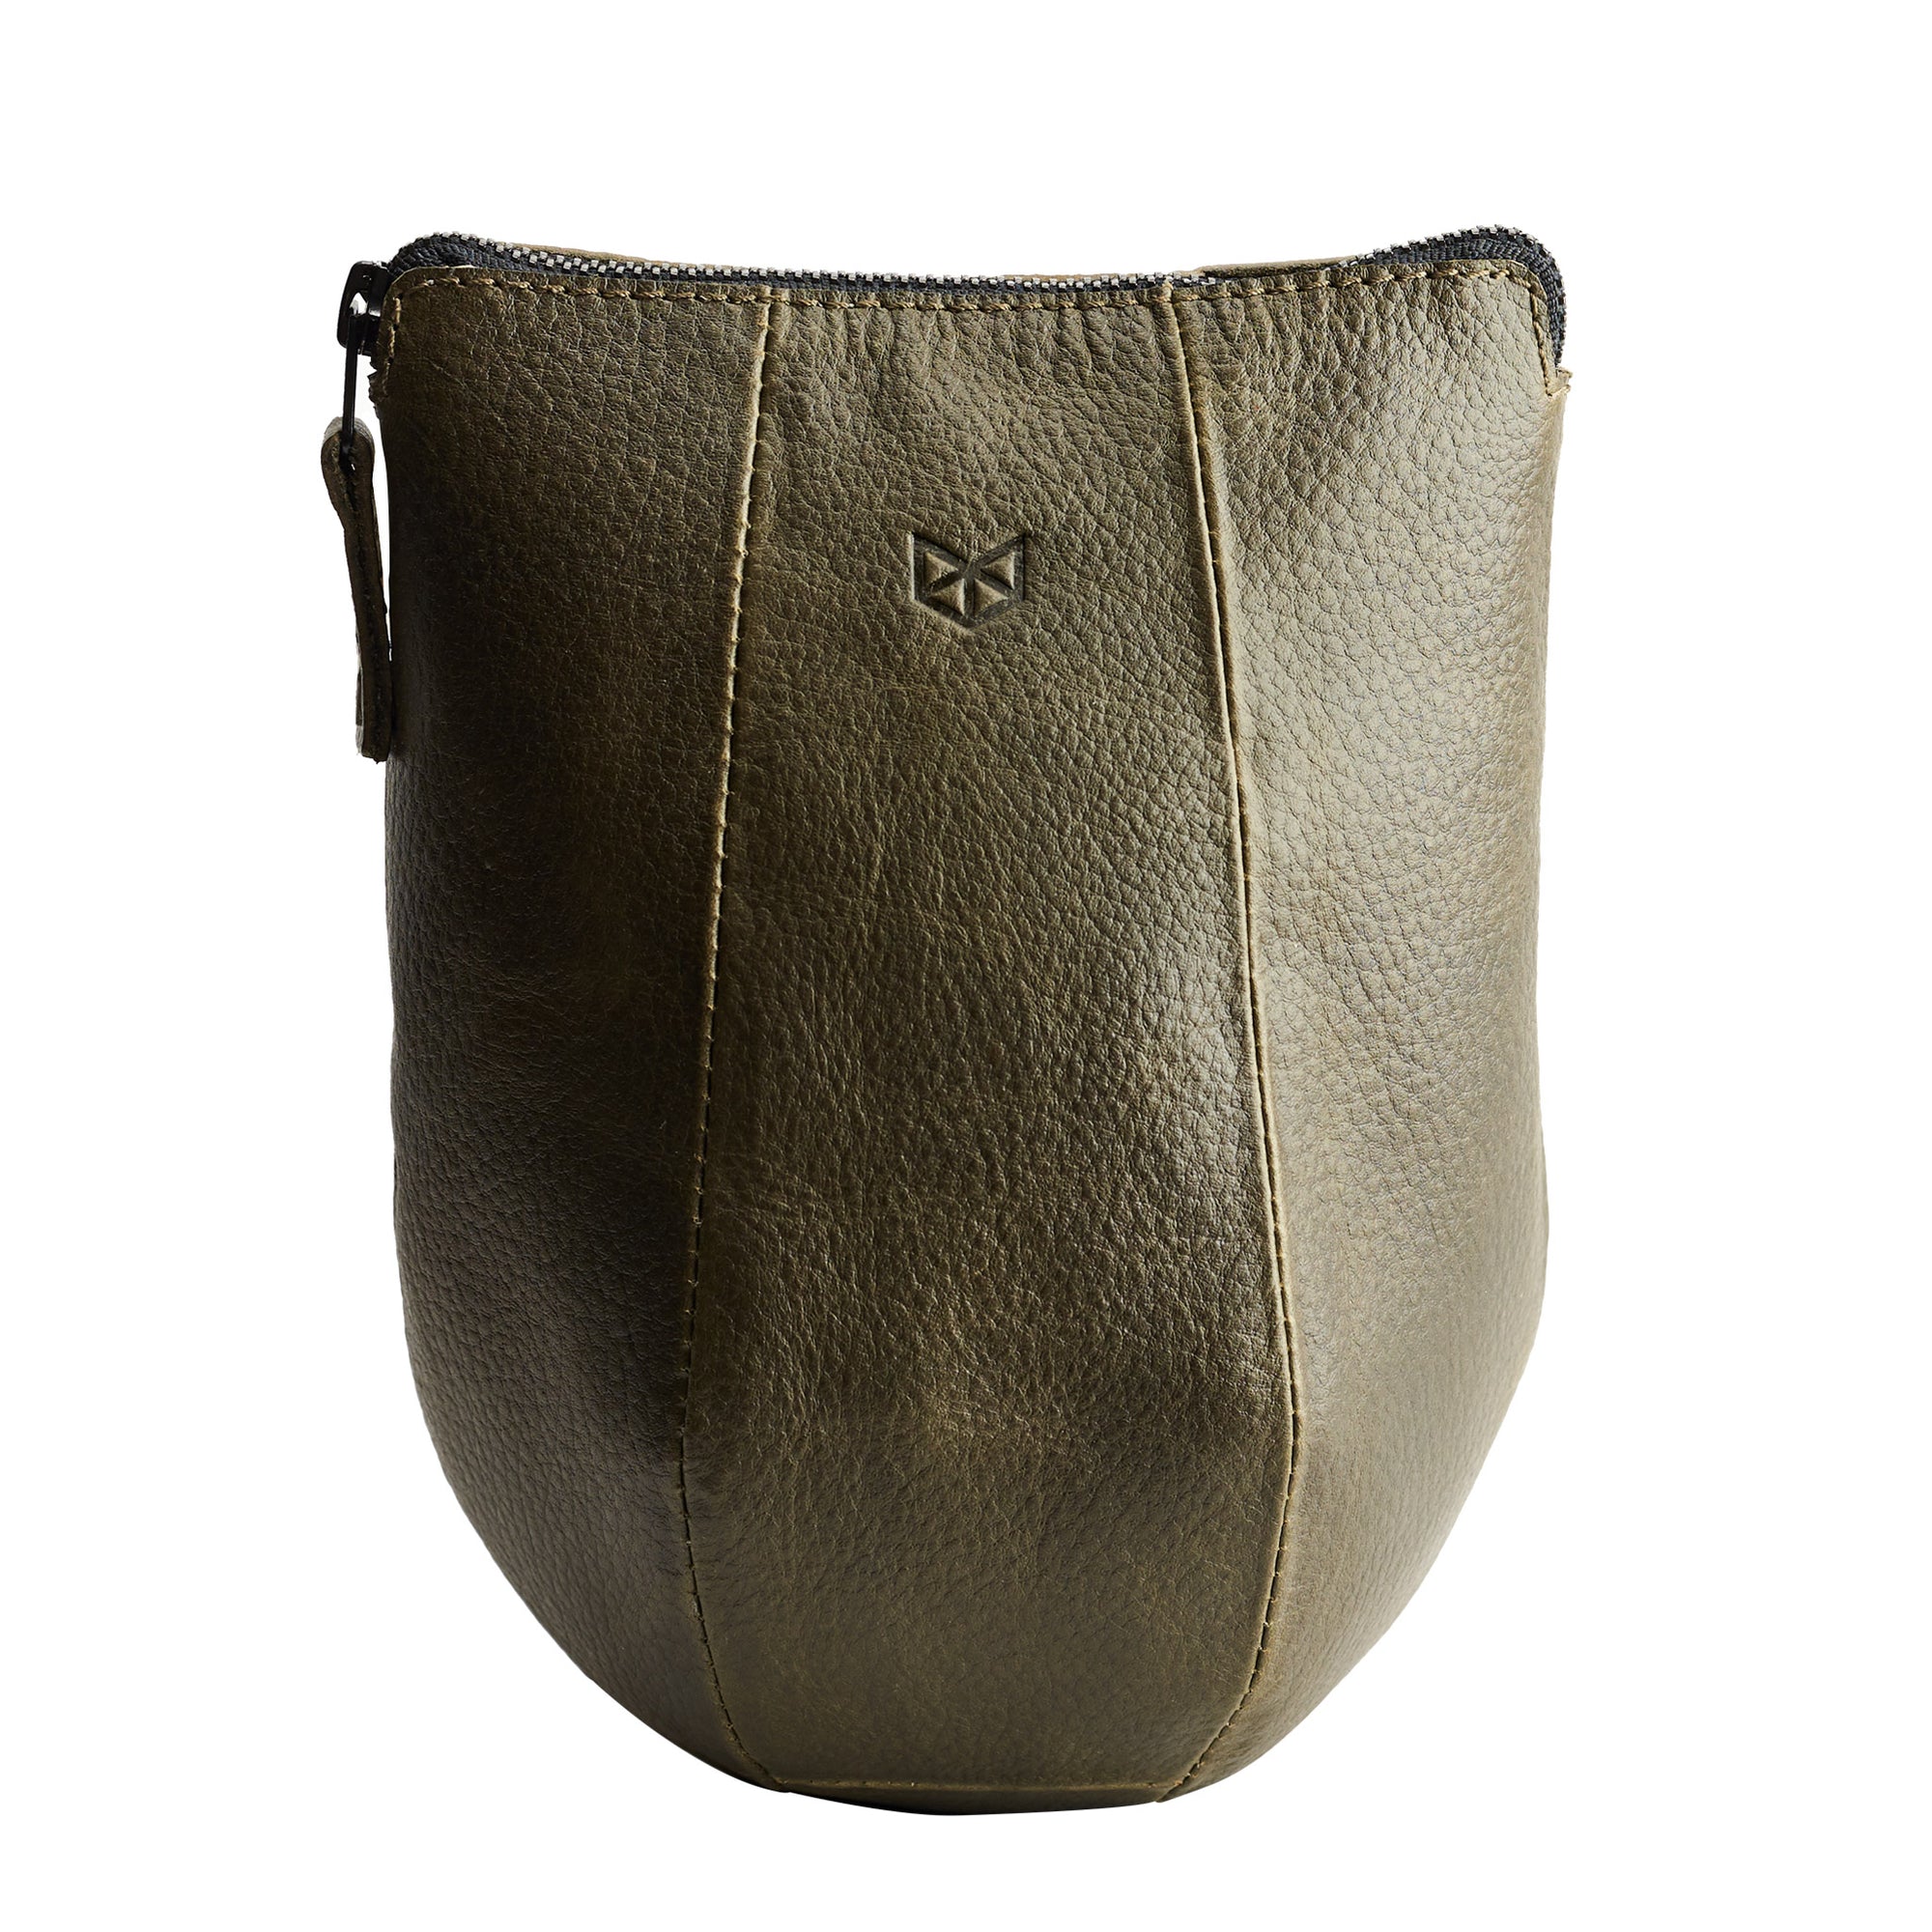 Green leather boxer dopp kit for men. Custom groomsmen gifts. Travel bag for men